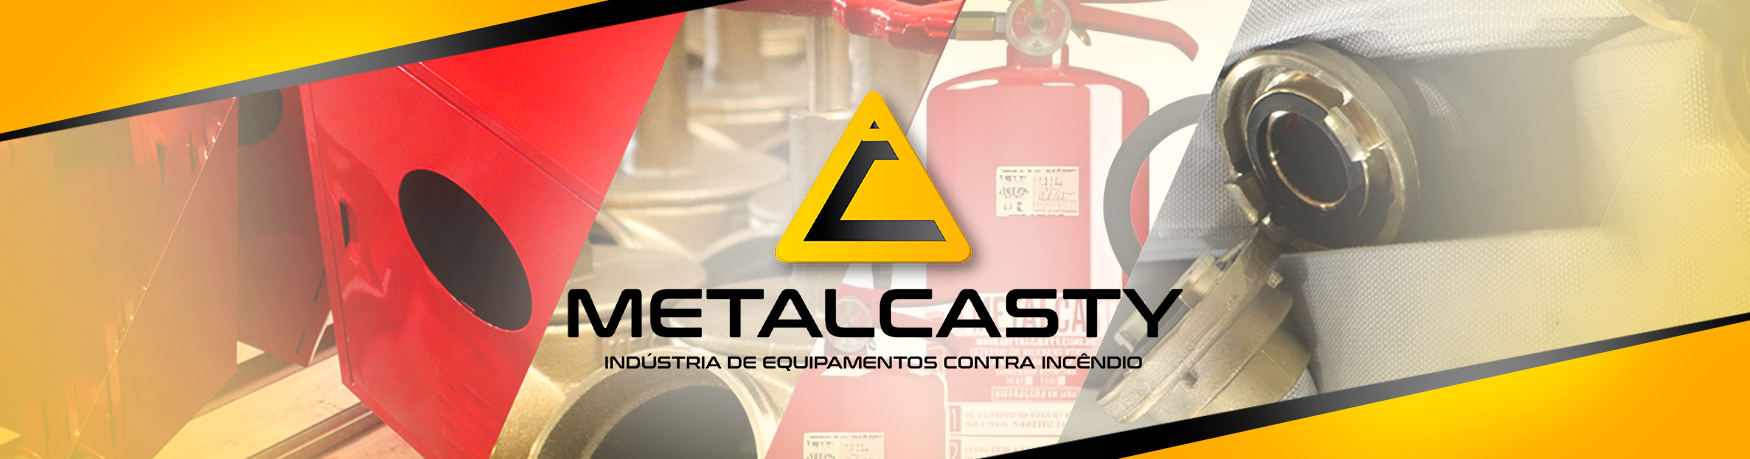 metalcasty produtos de combate a incêndios